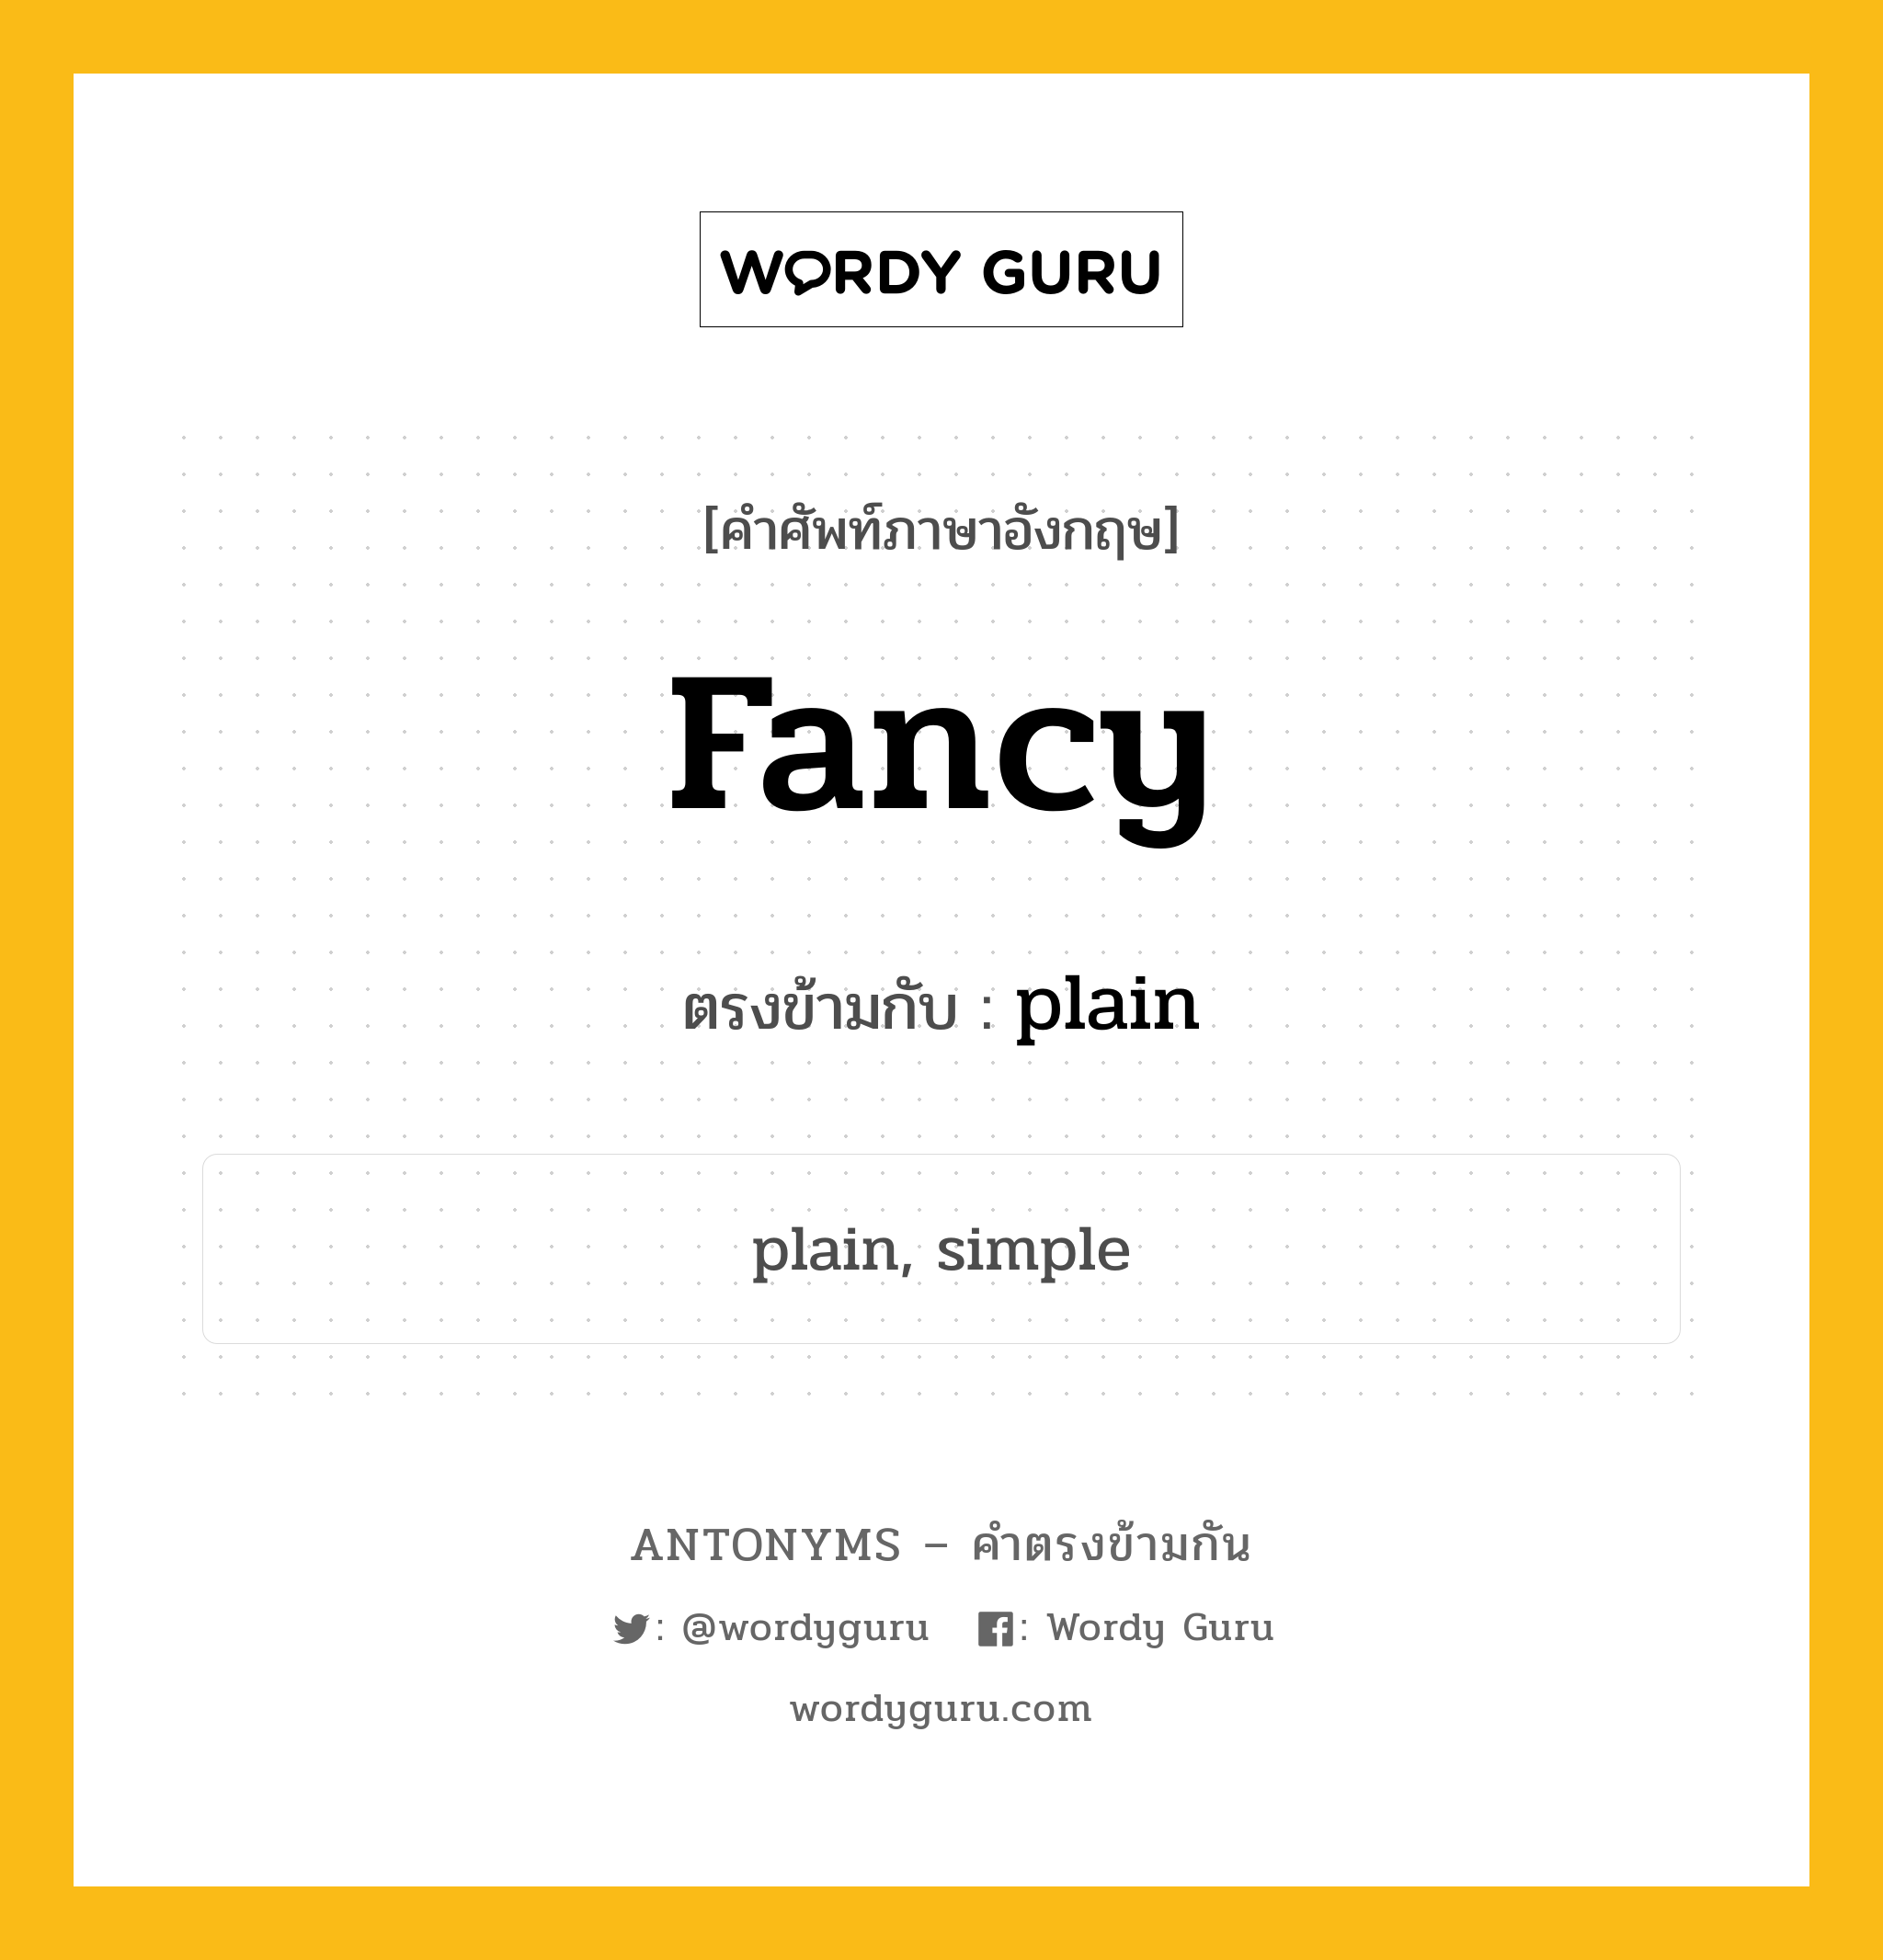 fancy เป็นคำตรงข้ามกับคำไหนบ้าง?, คำศัพท์ภาษาอังกฤษ fancy ตรงข้ามกับ plain หมวด plain